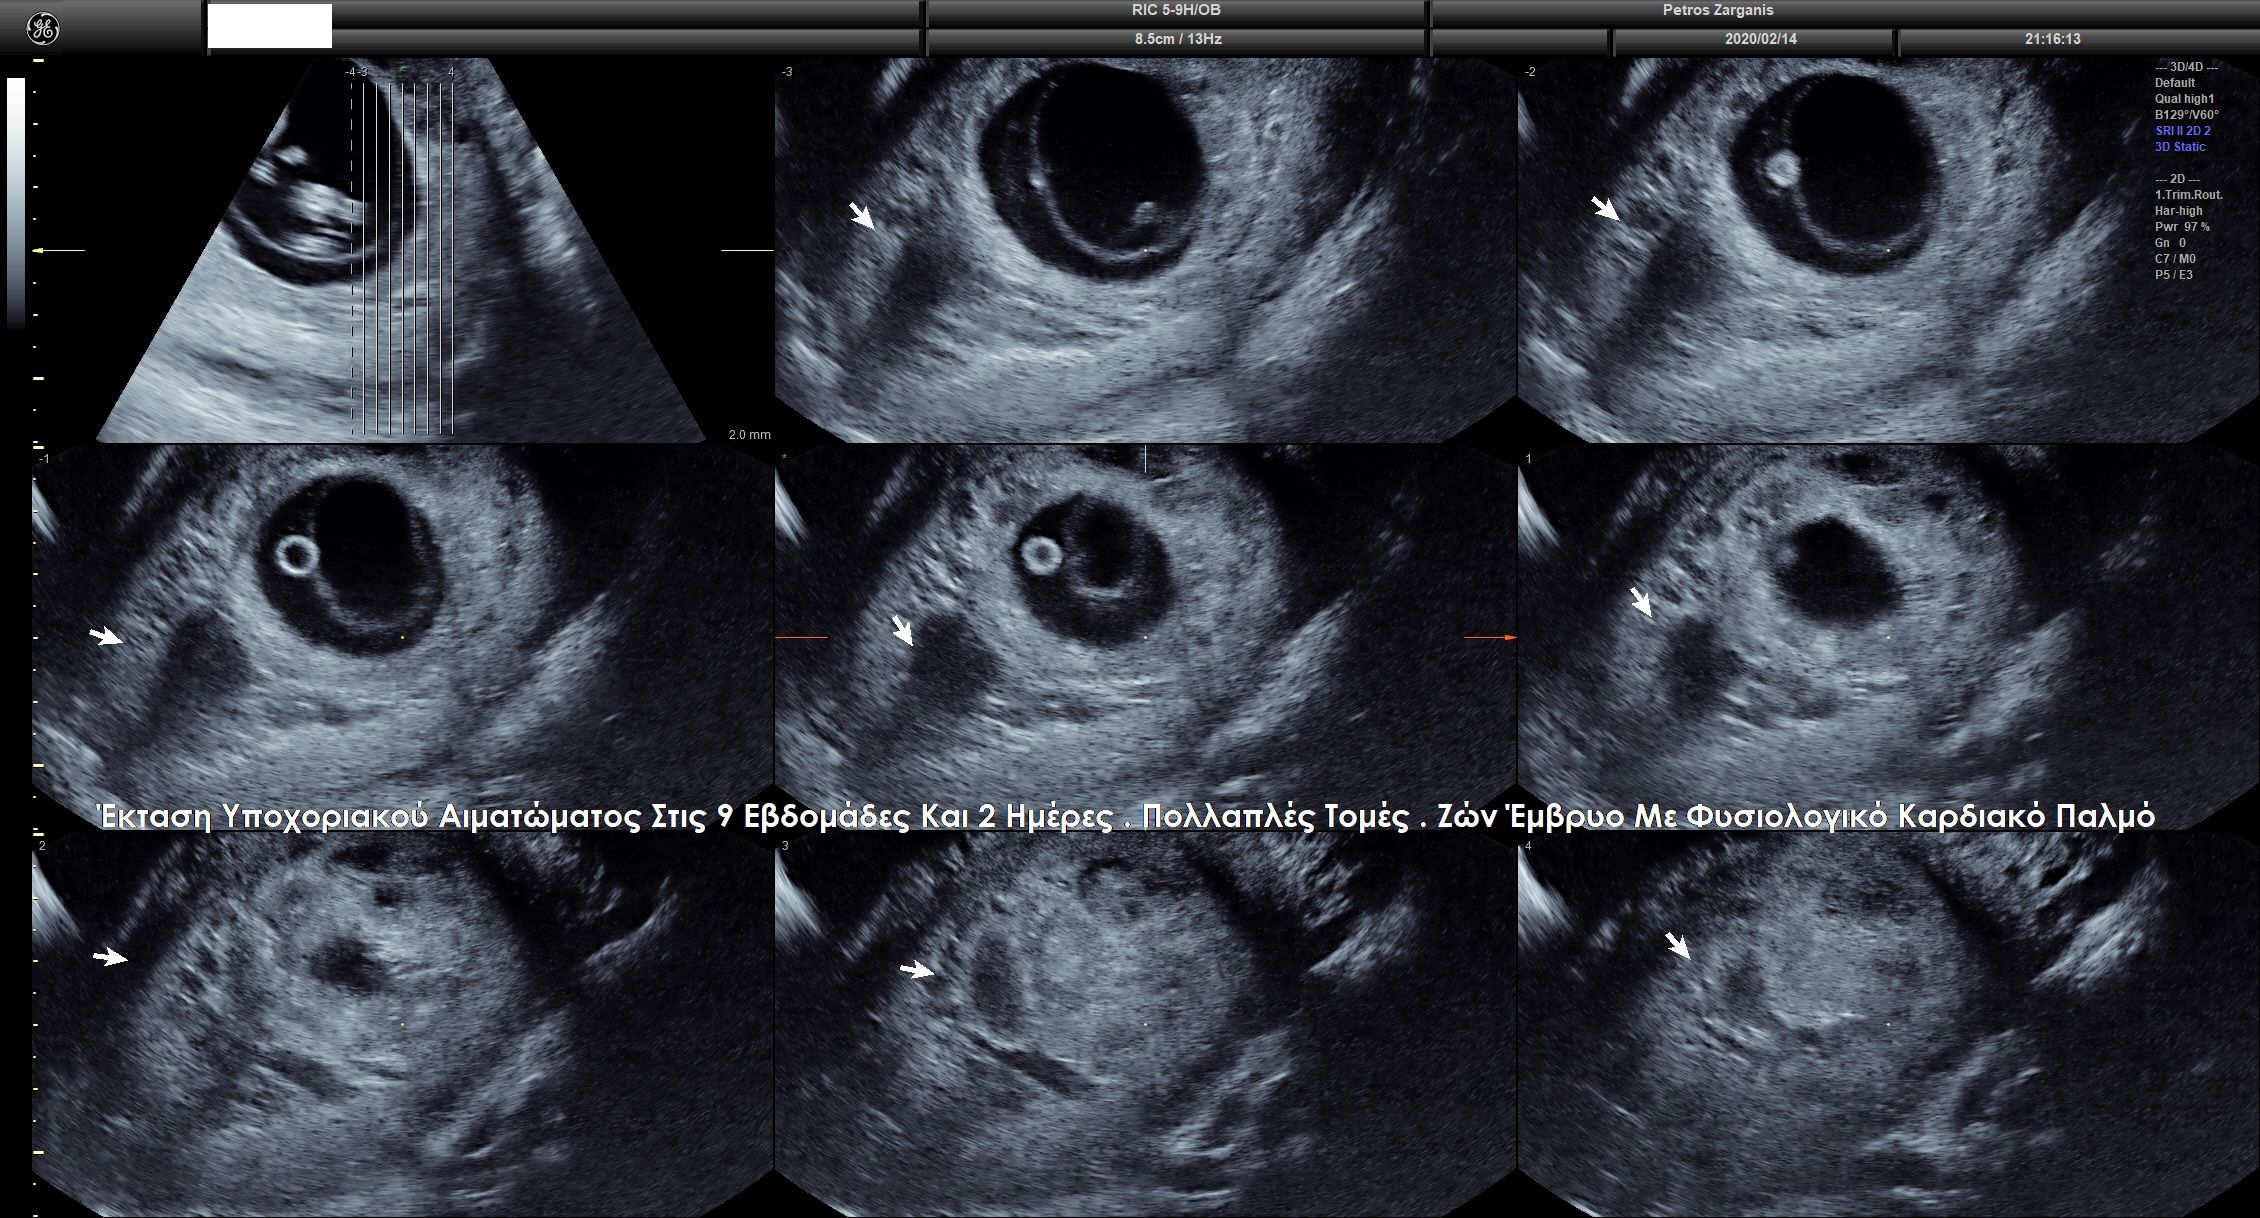 Απεικόνιση της εγκυμοσύνης στις 9 εβδομάδες και 2 ημέρες  με πολλαπλές τομές . 
Η υποχοριακή αιμορραγία φαίνεται στα βέλη .